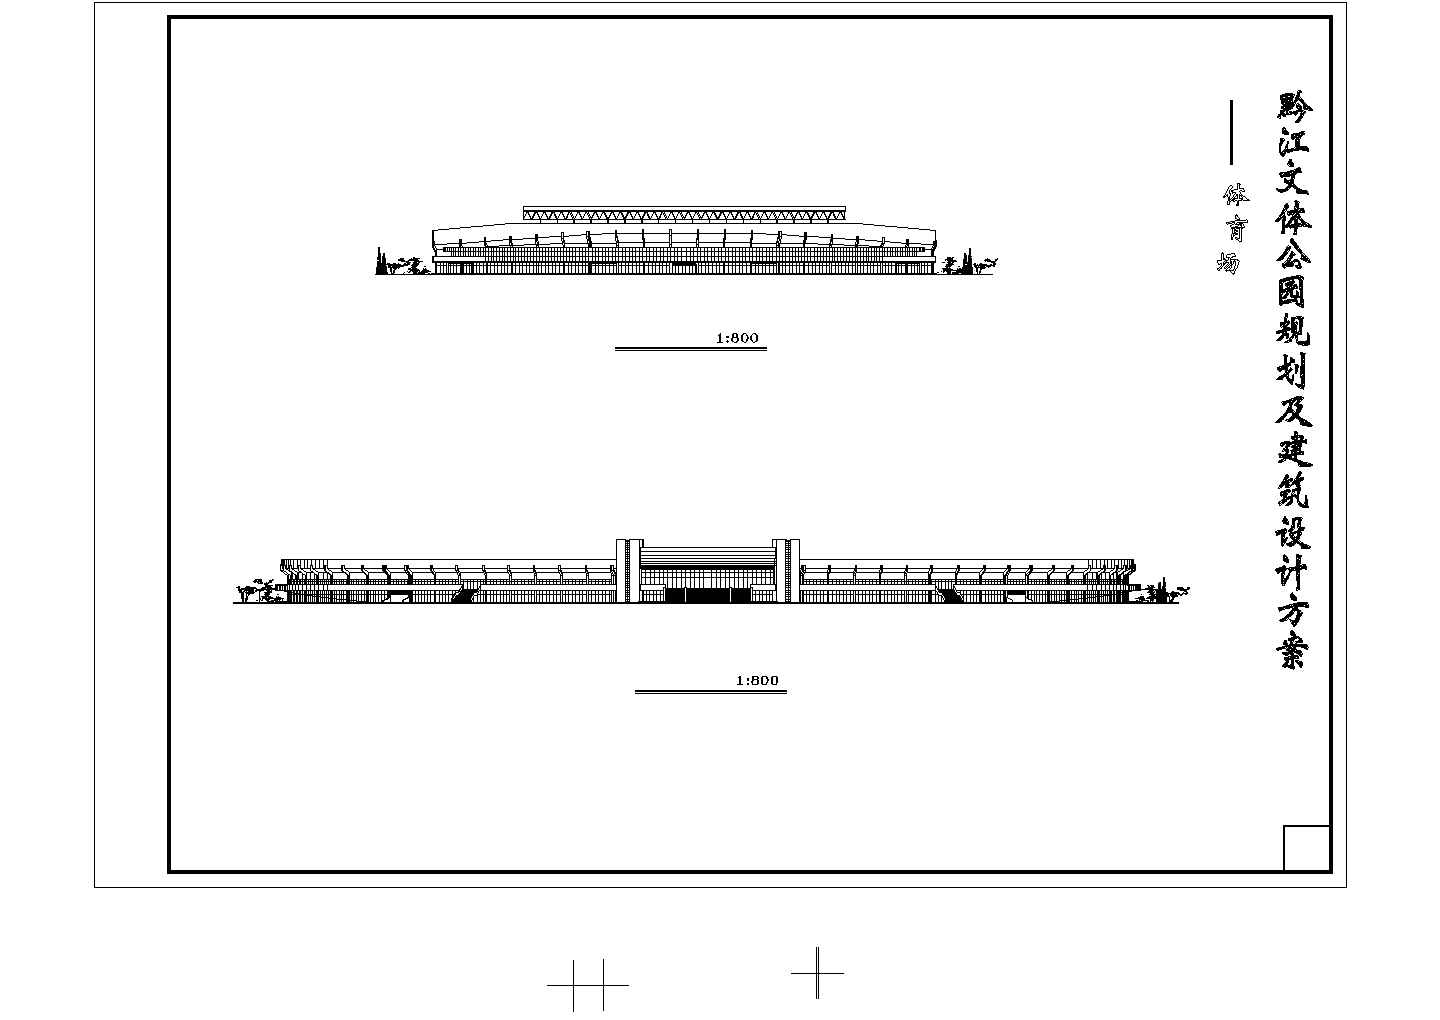 【苏州】某园设施全套规划及建筑设计方案图纸(含楼座夹层平面图)